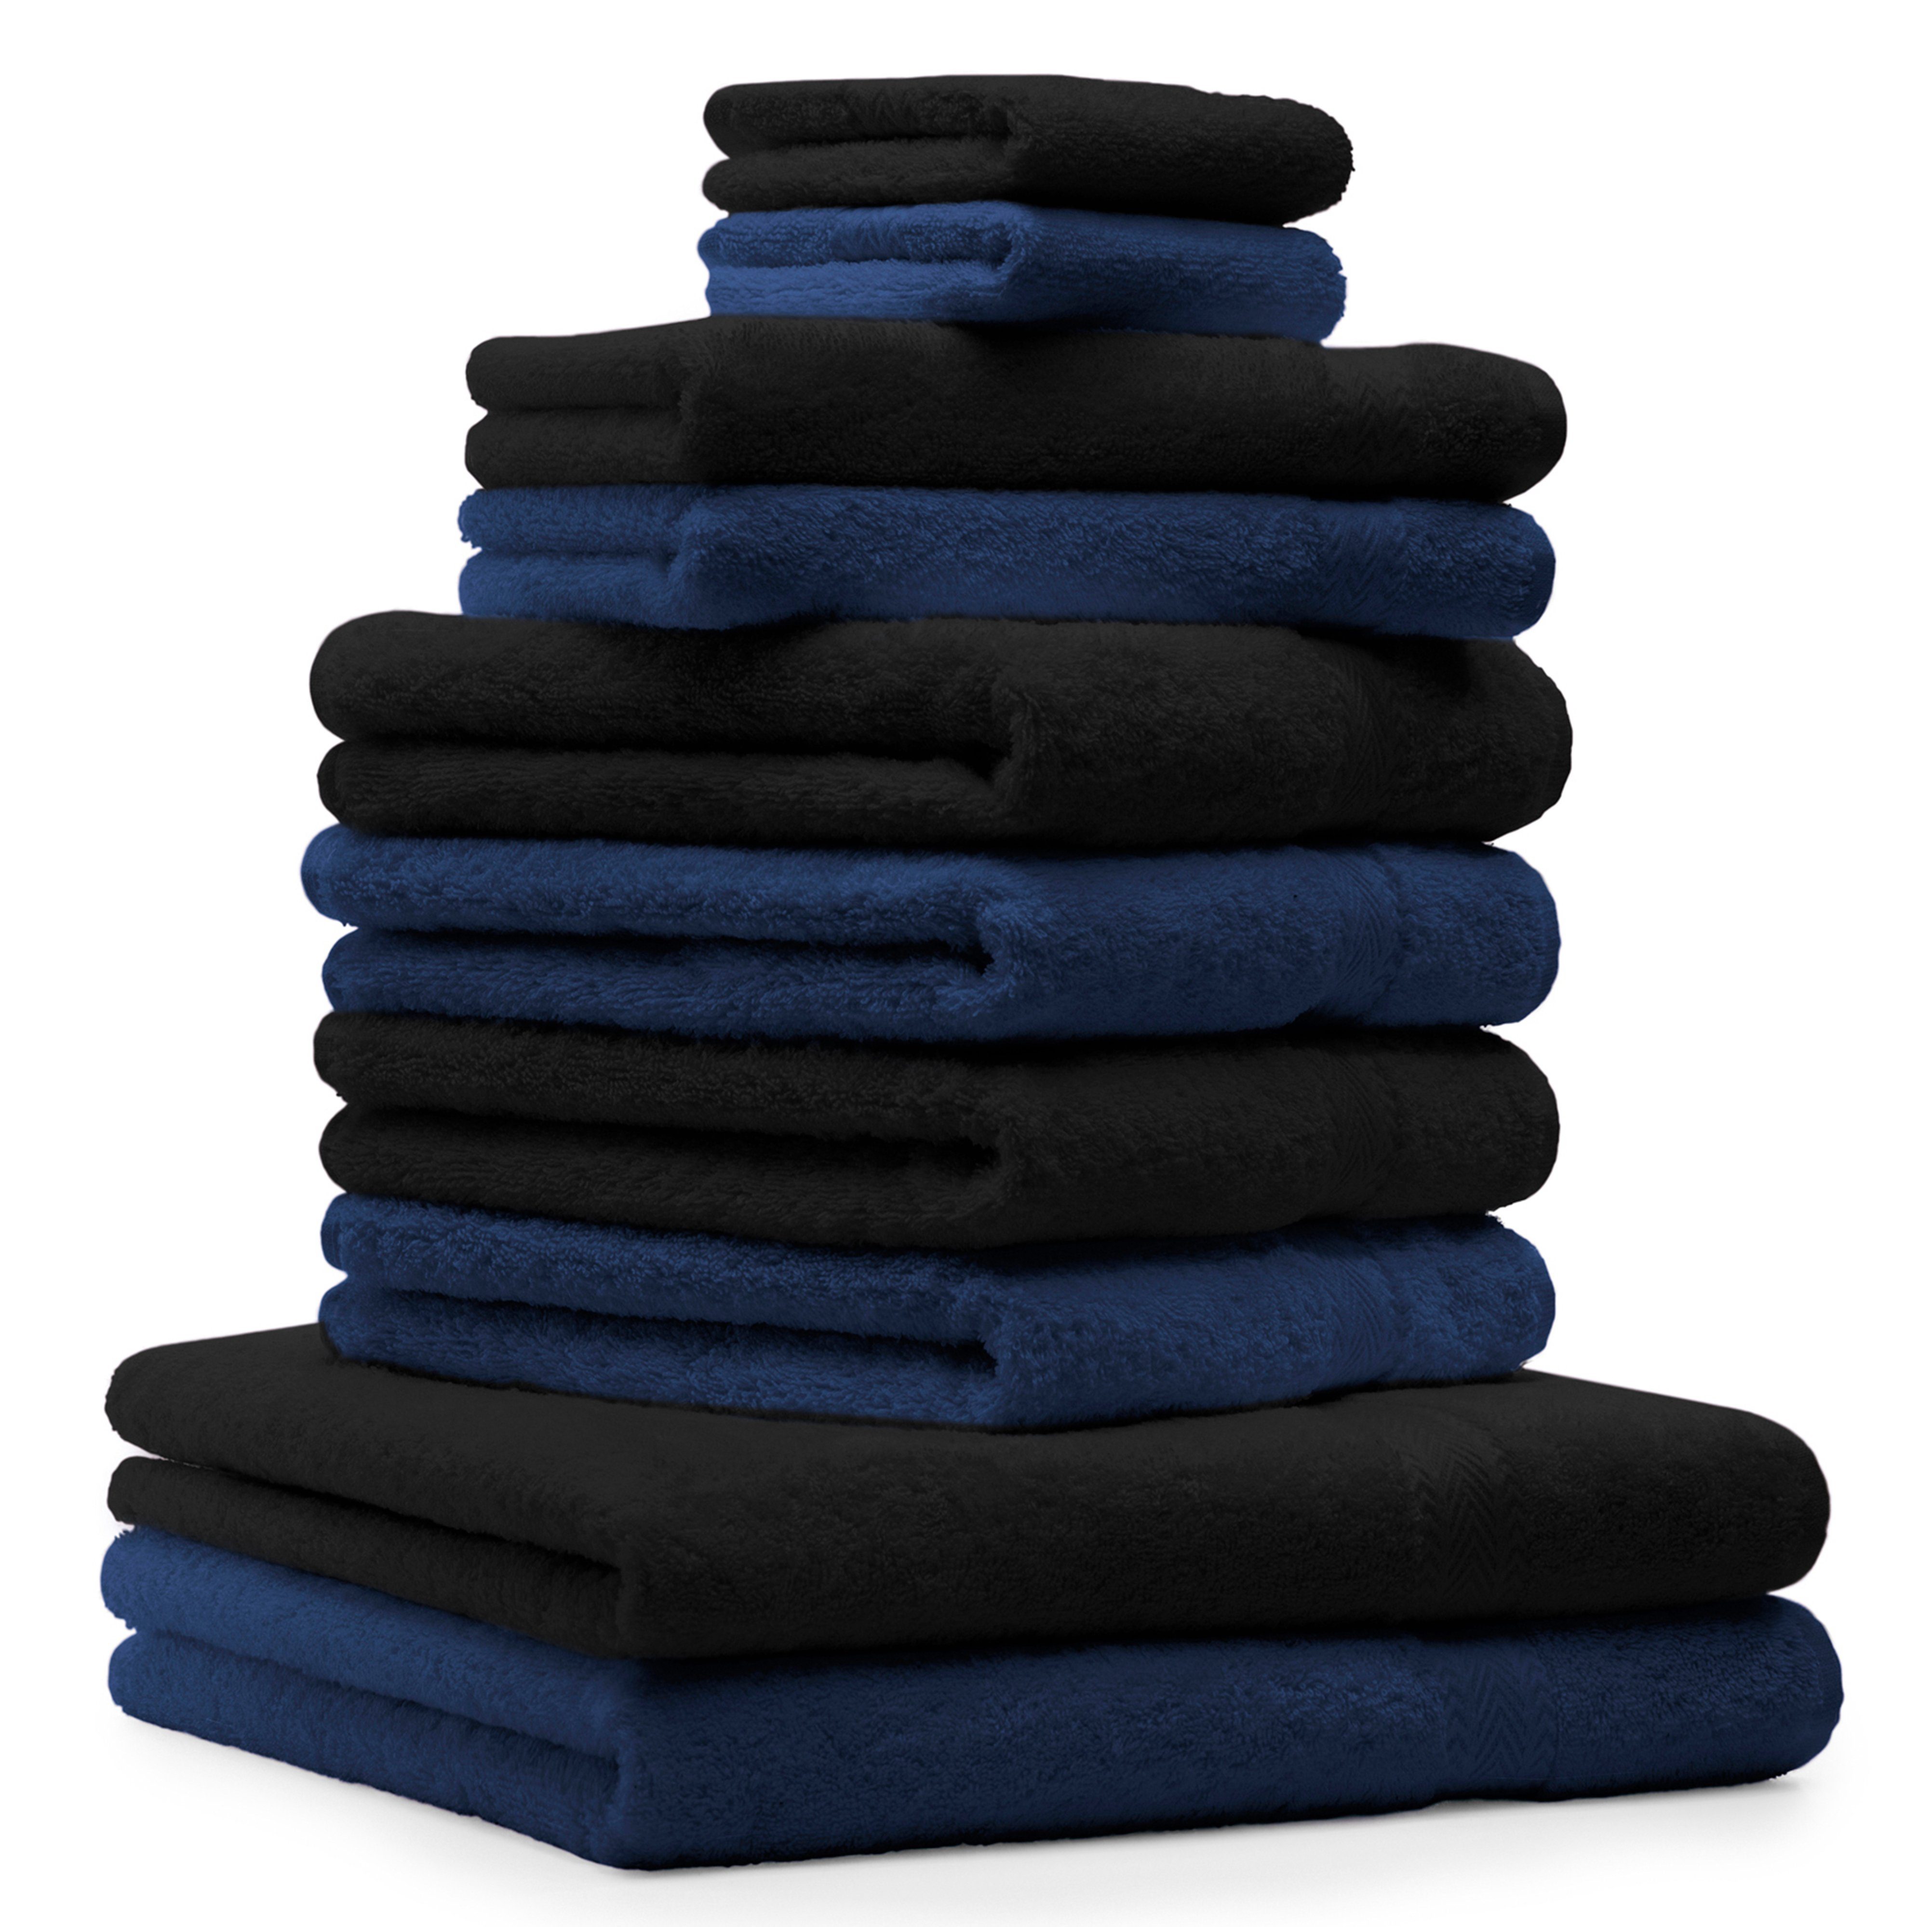 Betz Handtuch Set 10-TLG. Handtuch-Set Farbe dunkelblau und schwarz, 100% Baumwolle